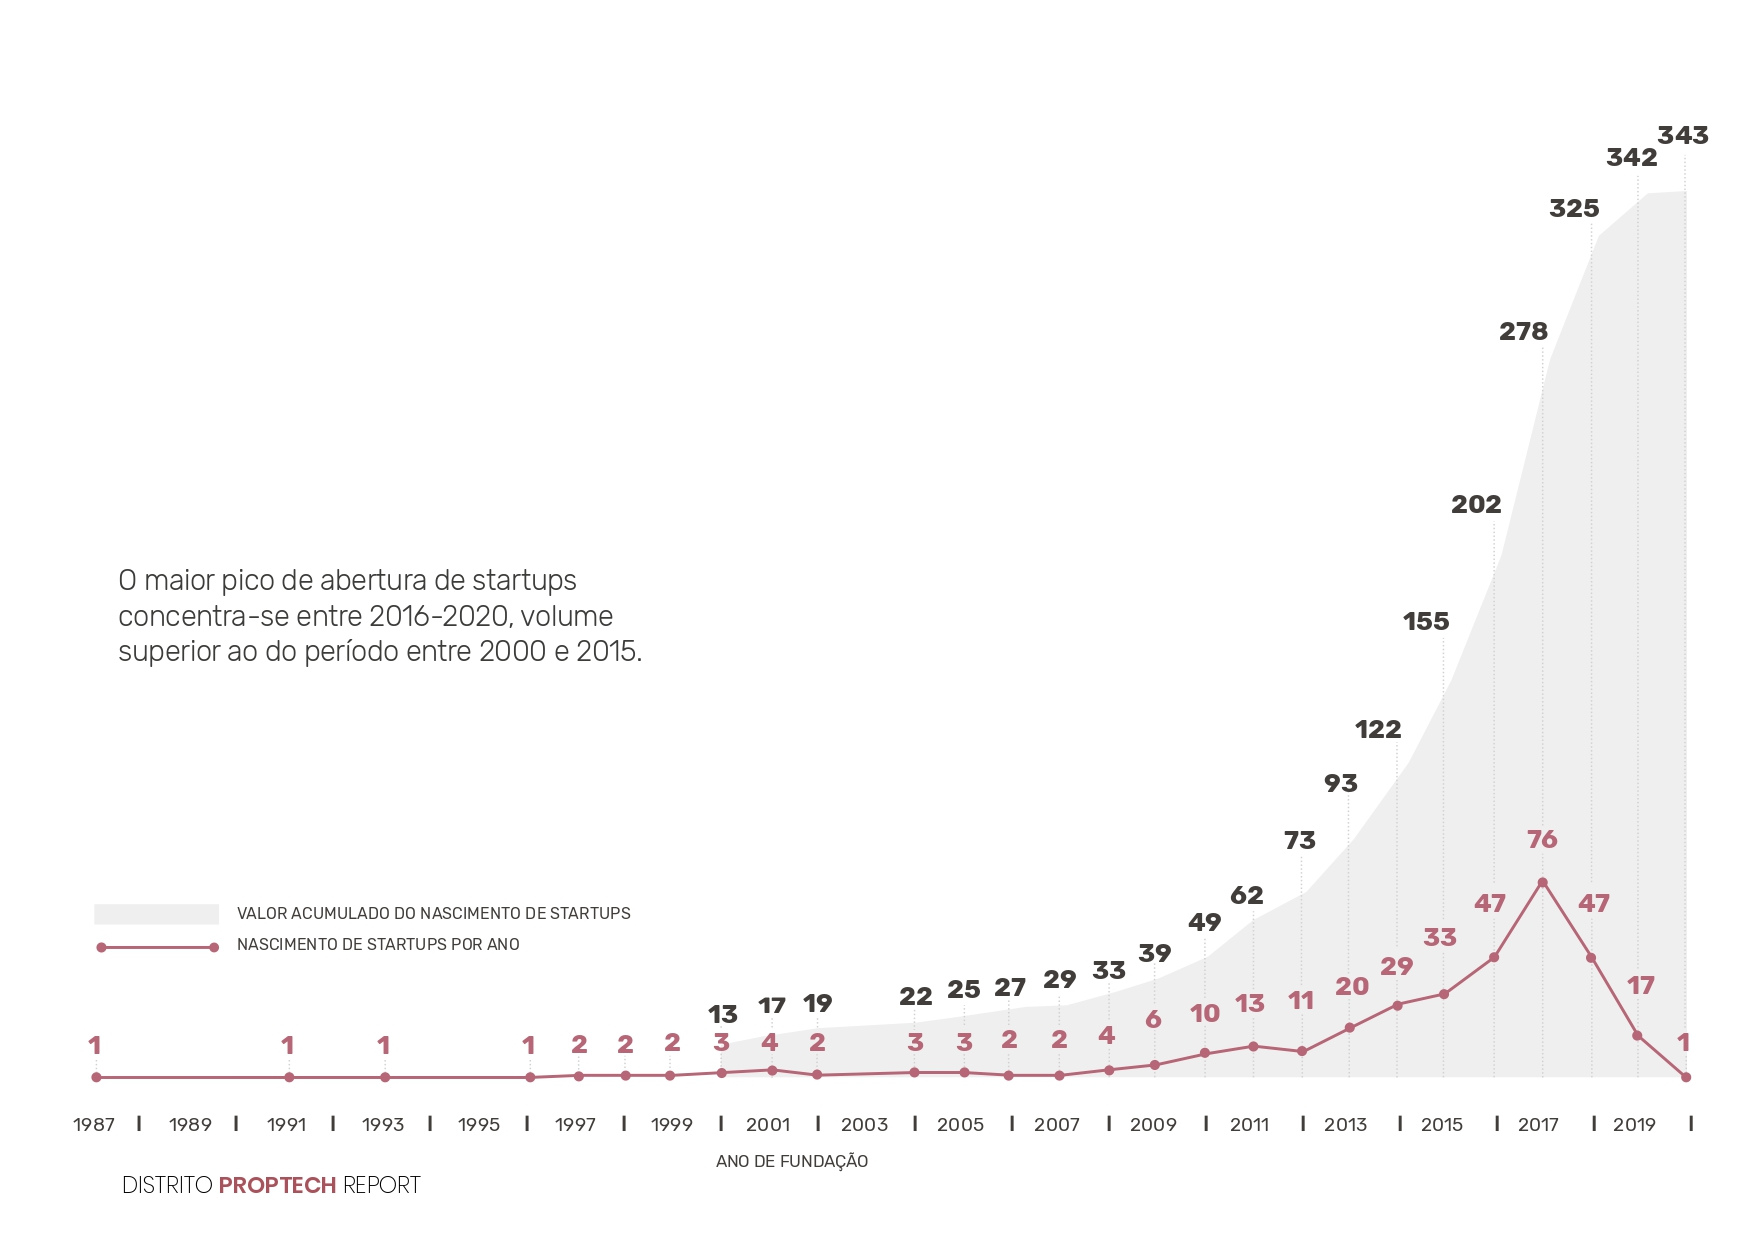 gráfico retratando a evolução da quantidade de proptechs no Brasil.